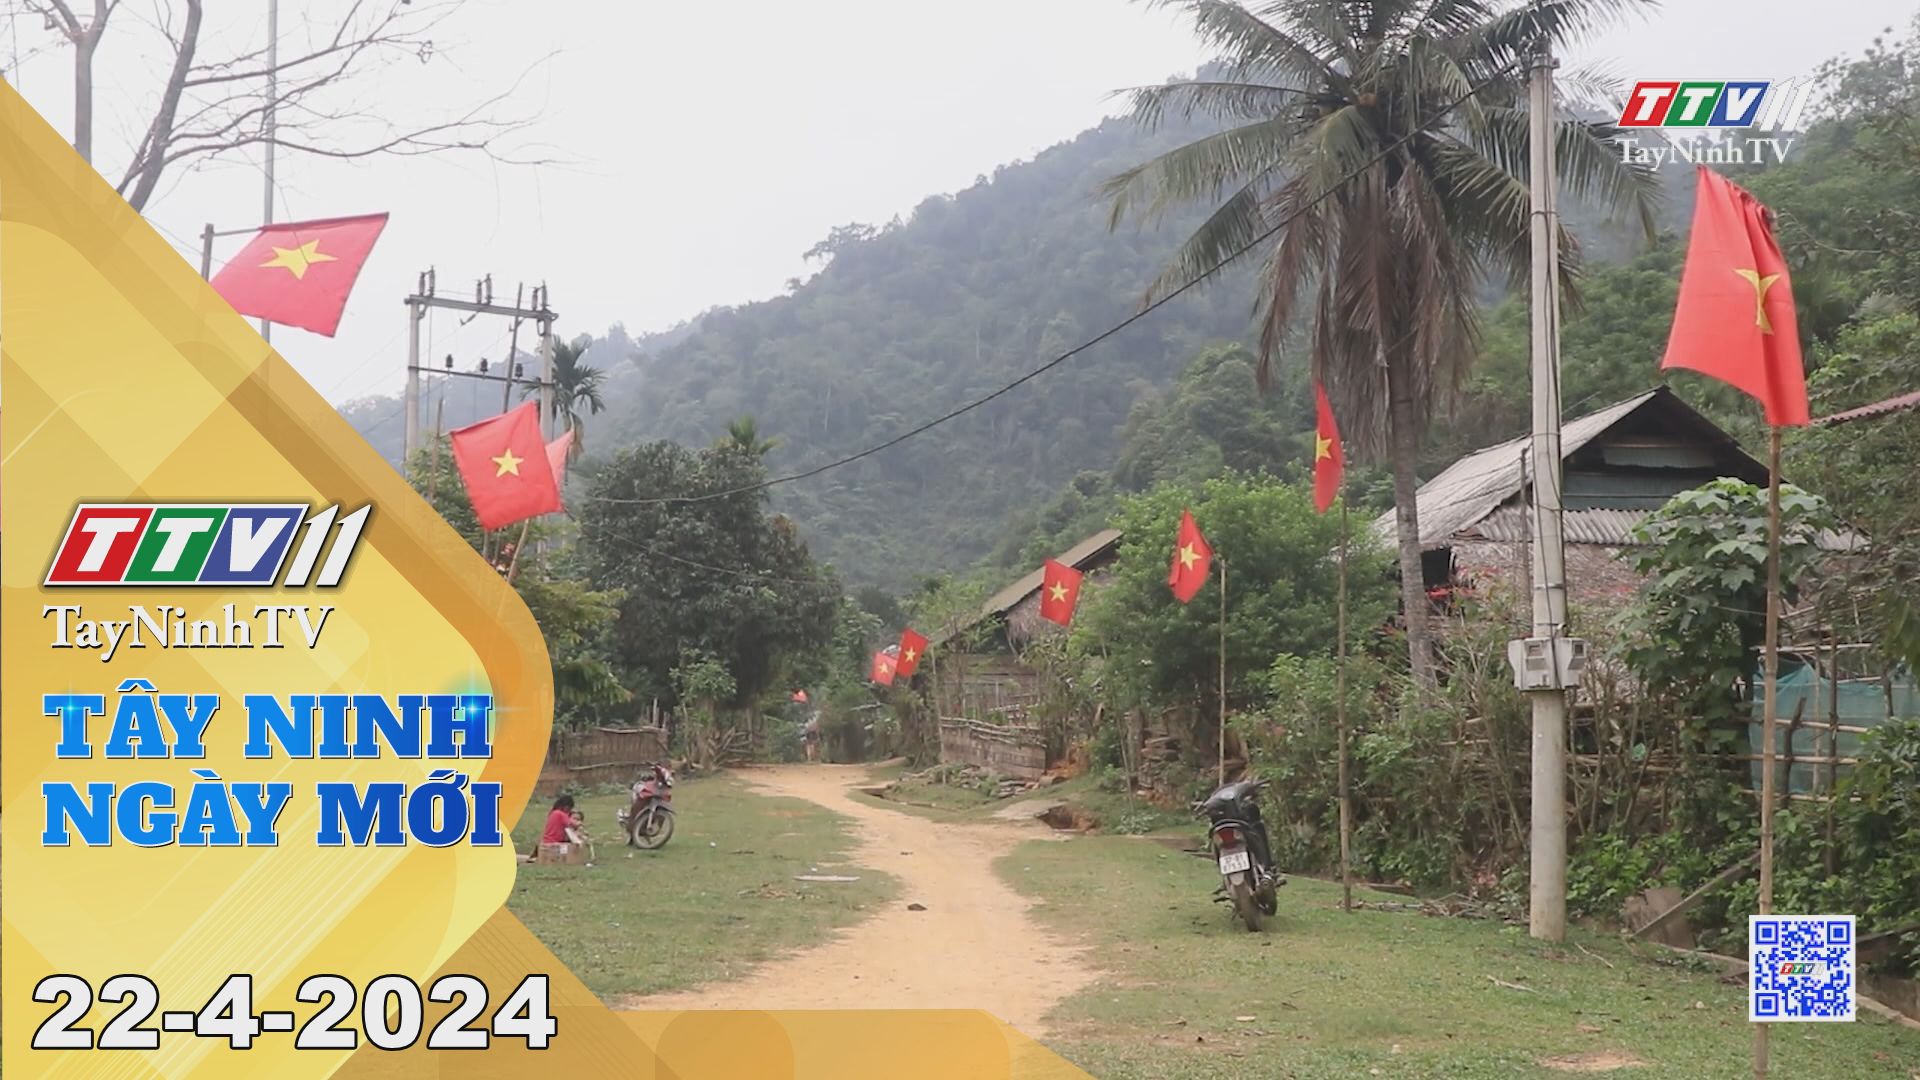 Tây Ninh ngày mới 22-4-2024 | Tin tức hôm nay | TayNinhTV